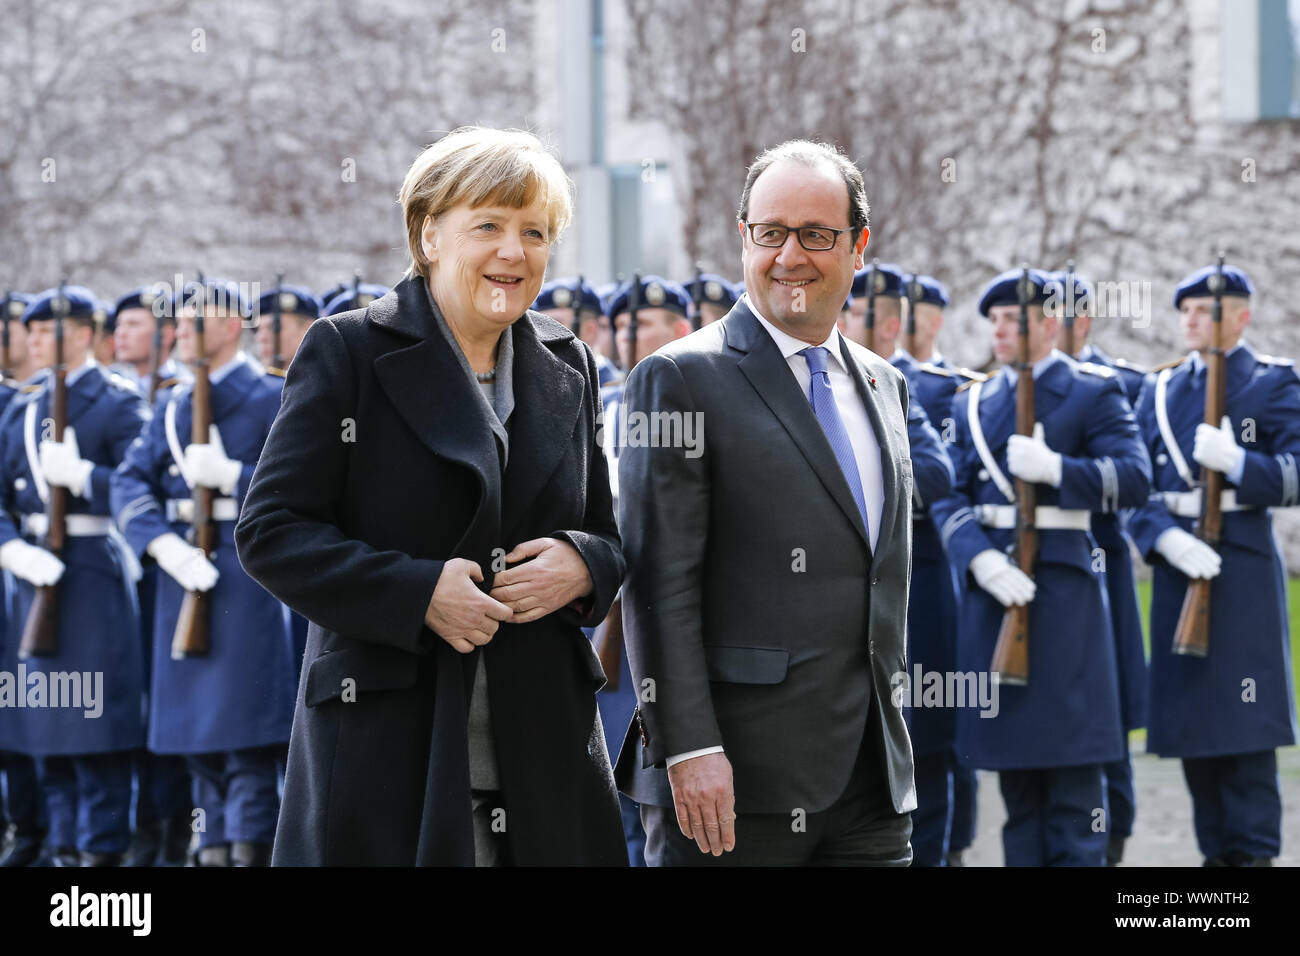 17. Tedesco-francese consiglio dei ministri di Berlino - La Merkel accoglie Holland Foto Stock